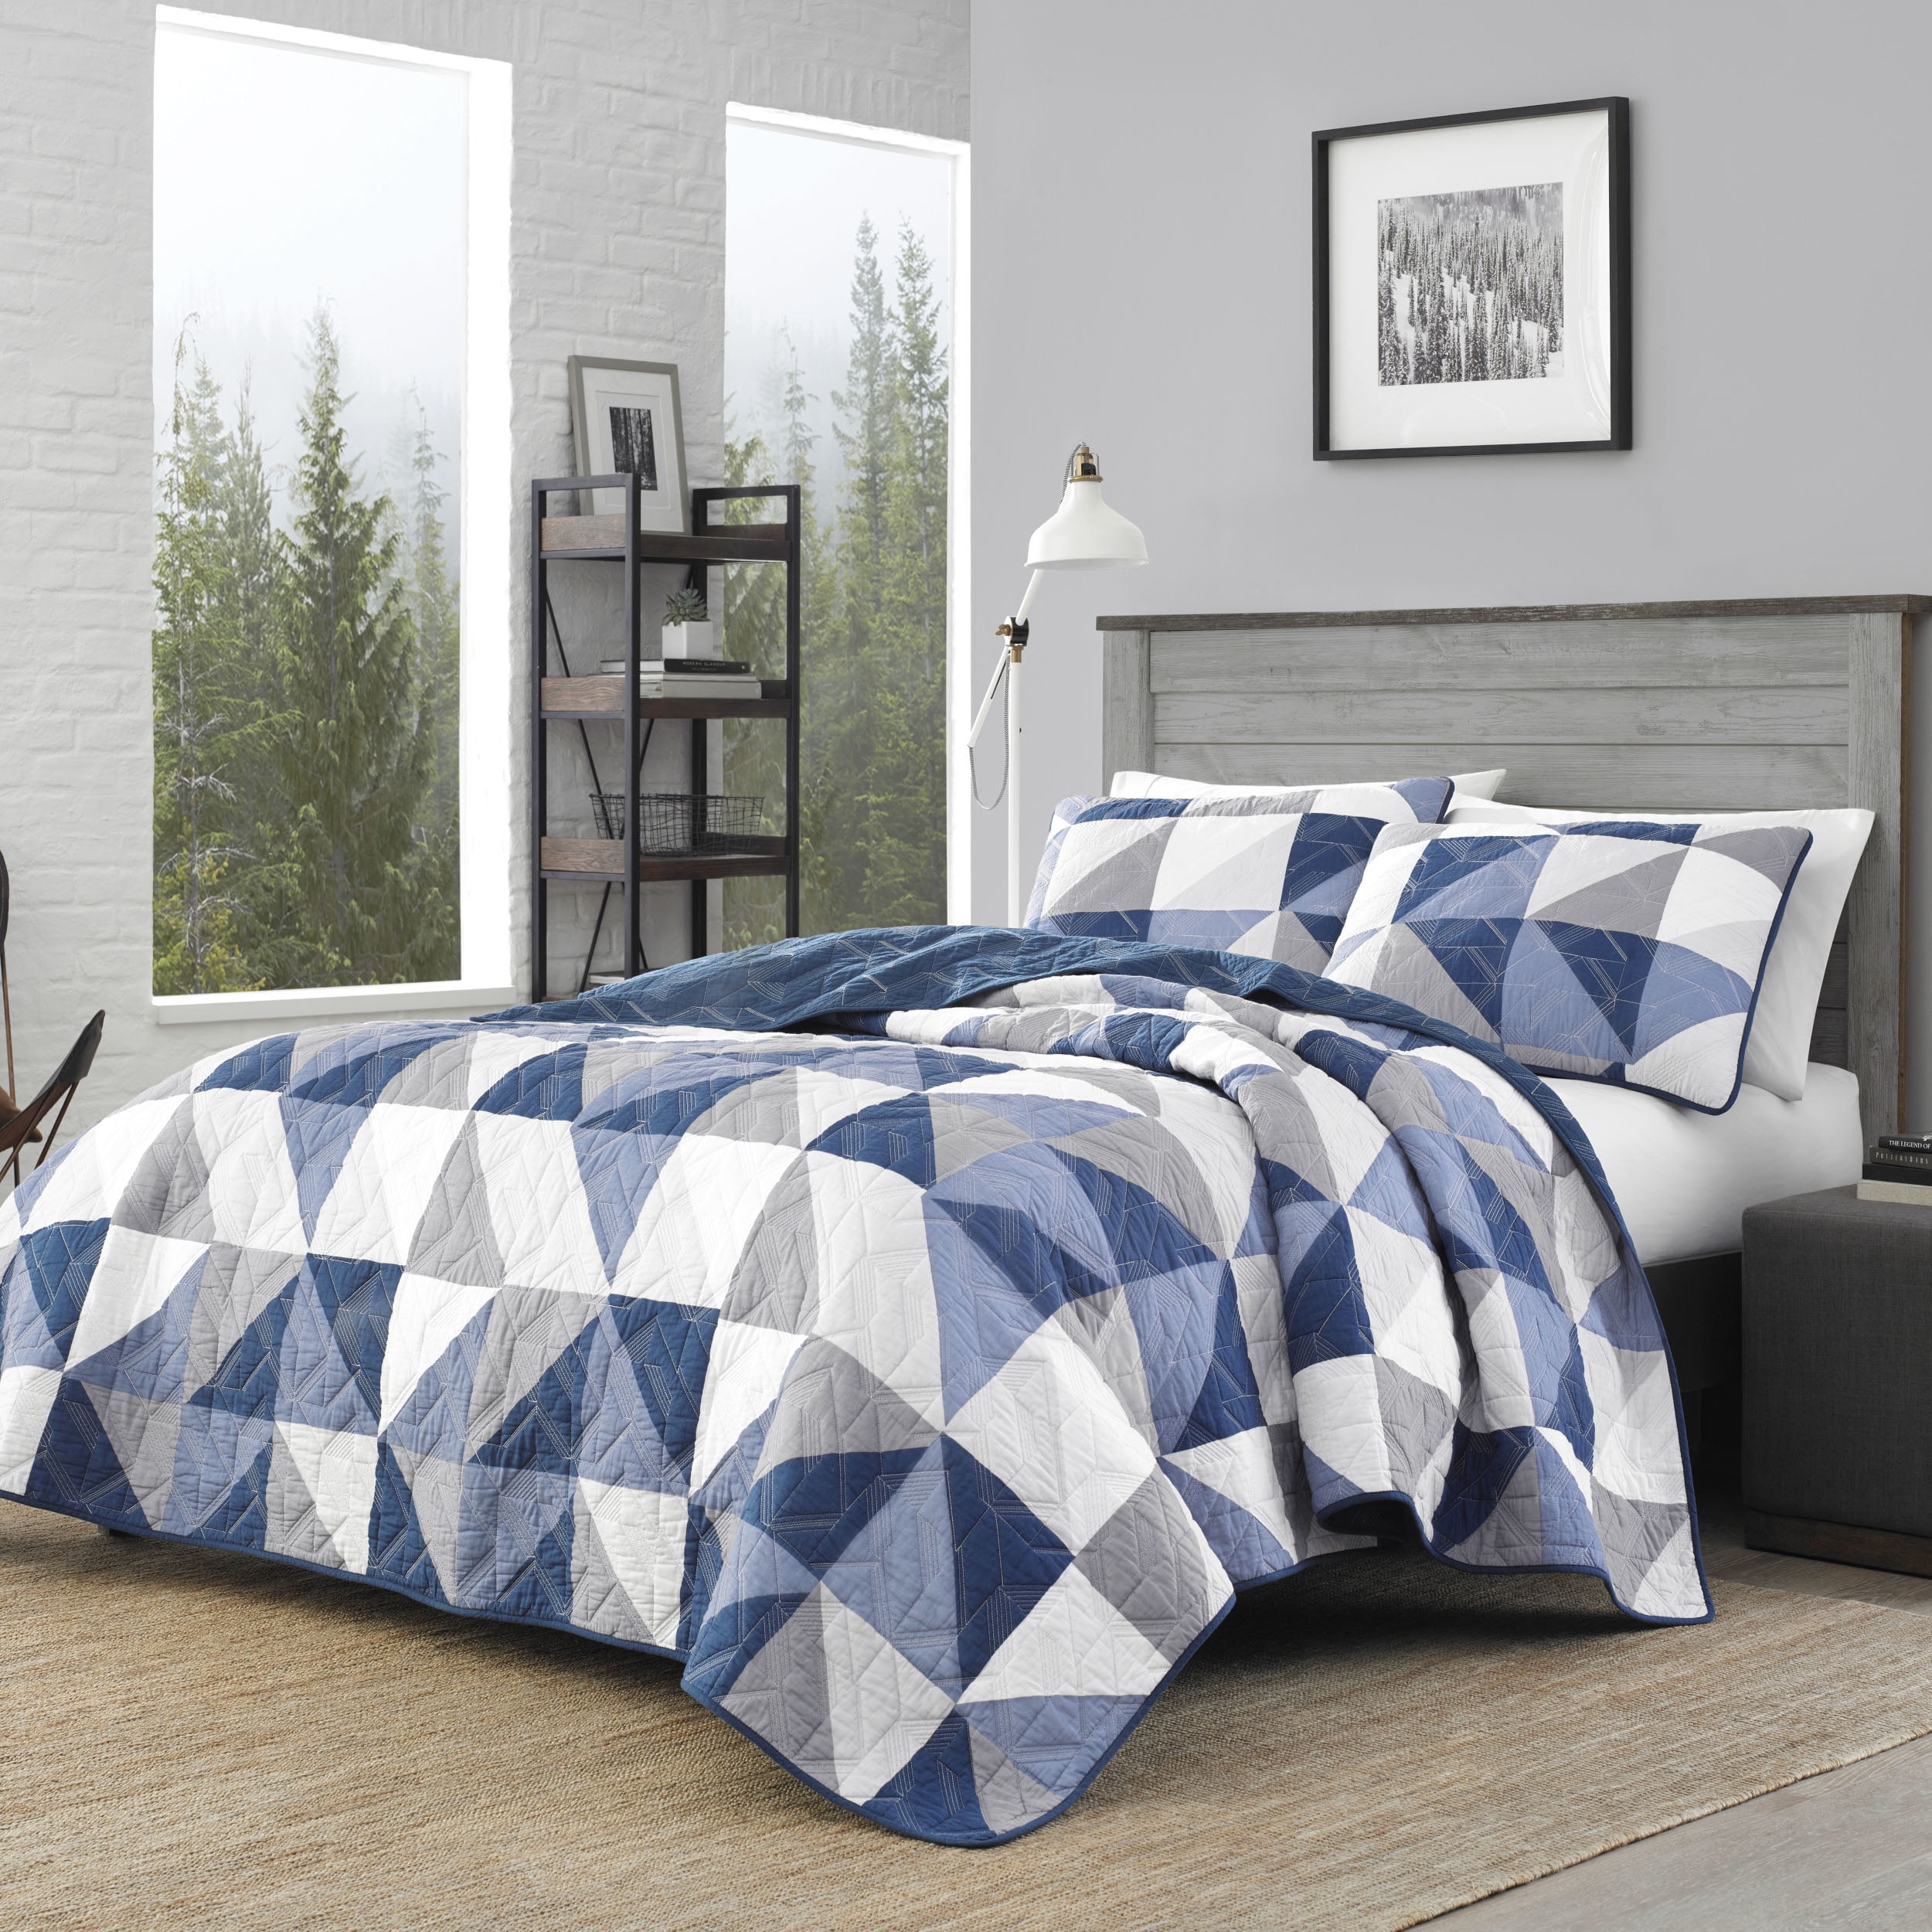 Twin Details about   Eddie Bauer Lakehouse Plaid Comforter Set Blue 